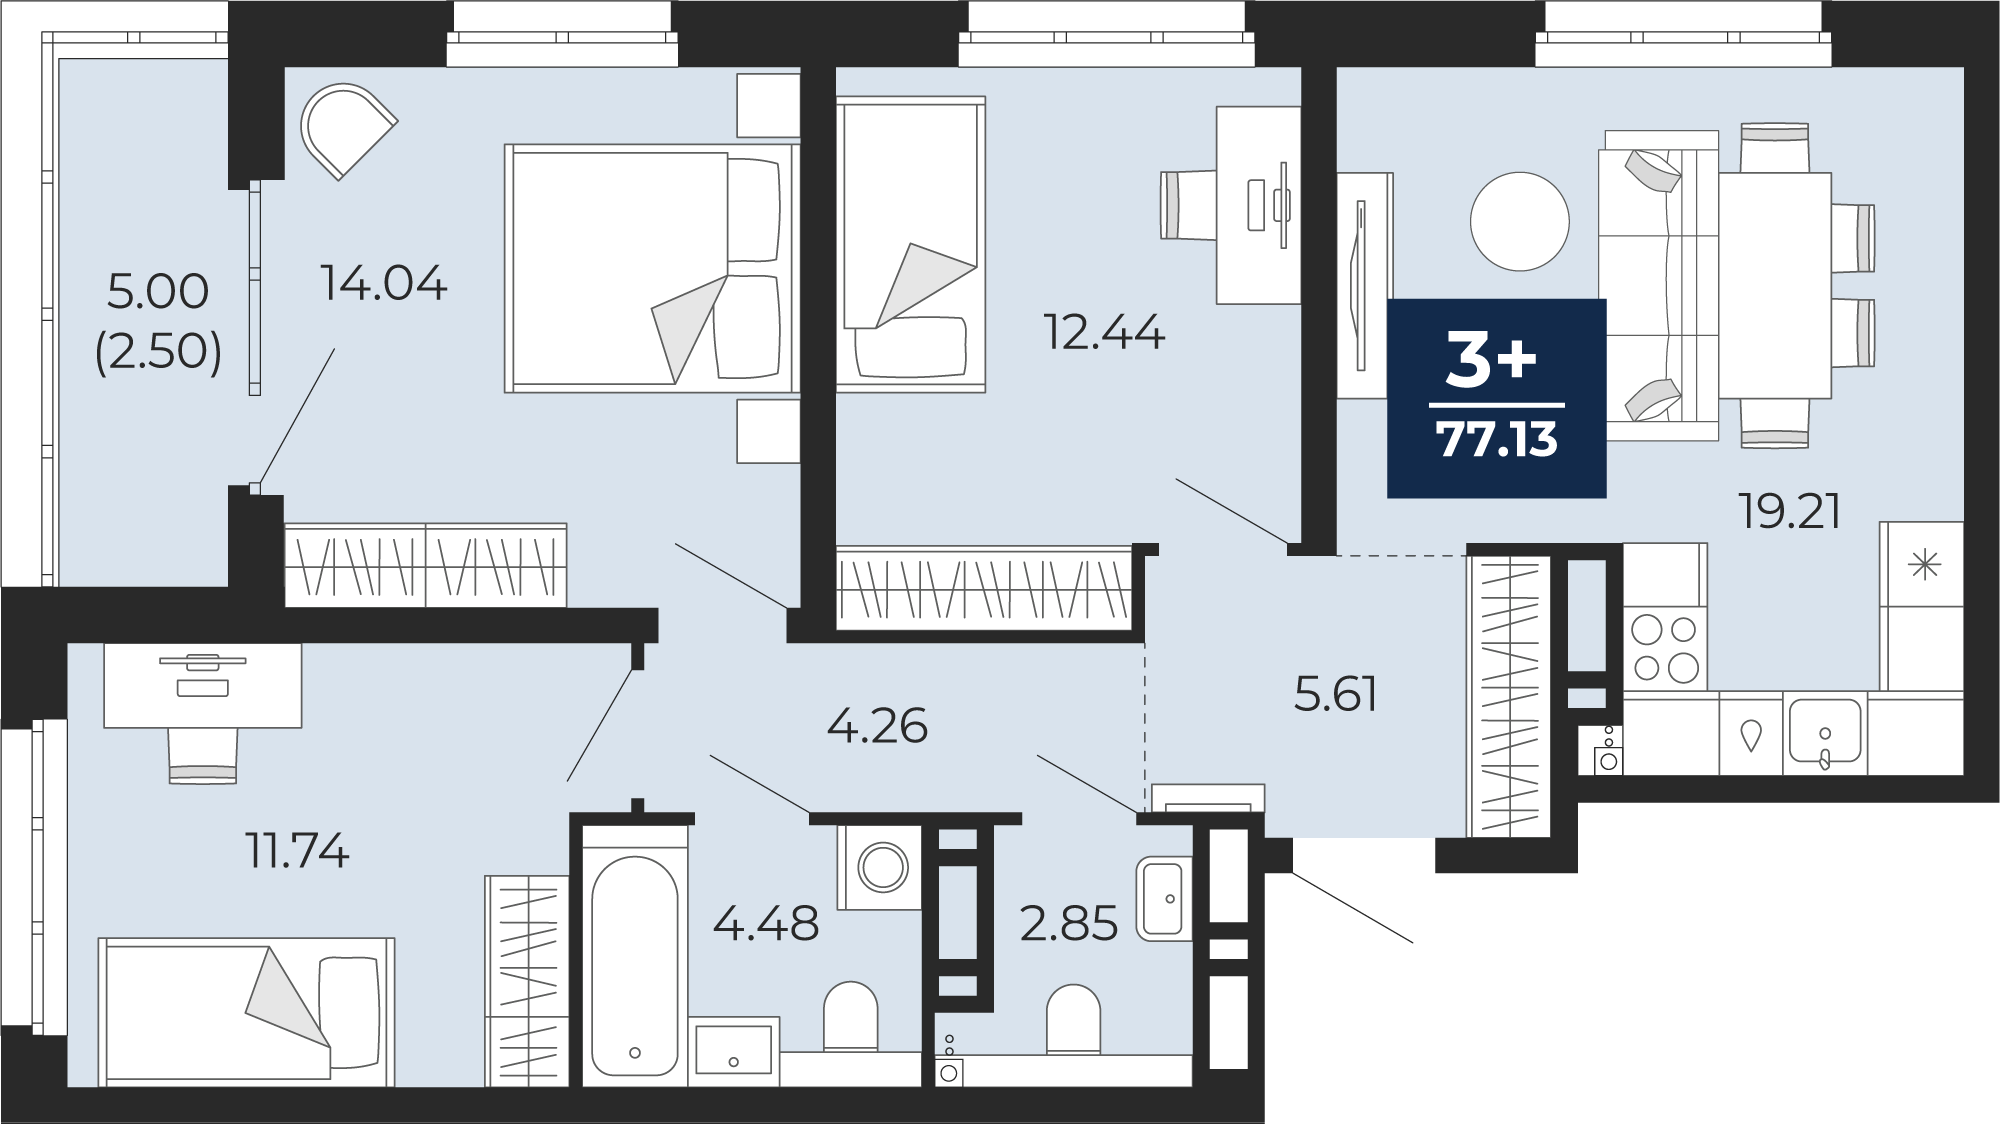 Квартира № 102, 3-комнатная, 77.13 кв. м, 14 этаж